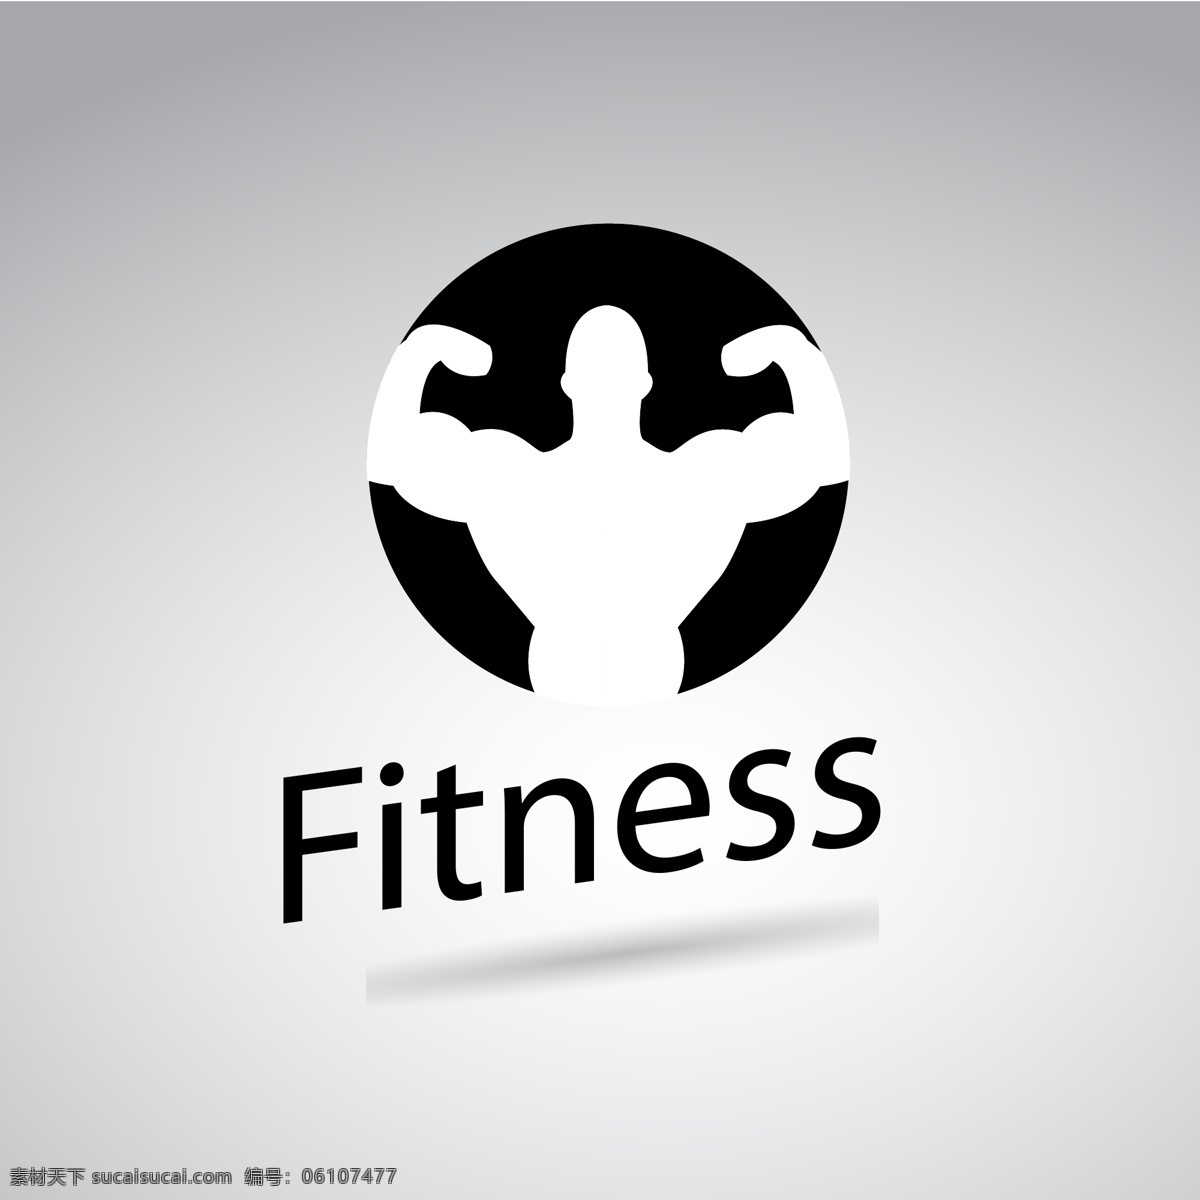 健身图标 健身标志 肌肉 发达 健美 举重 哑铃 健身运动 标志图形 体育 锻炼 logo 创意 健身 图形标志设计 商标设计 企业logo 公司logo 图标logo 标志图标 矢量 最新矢量素材